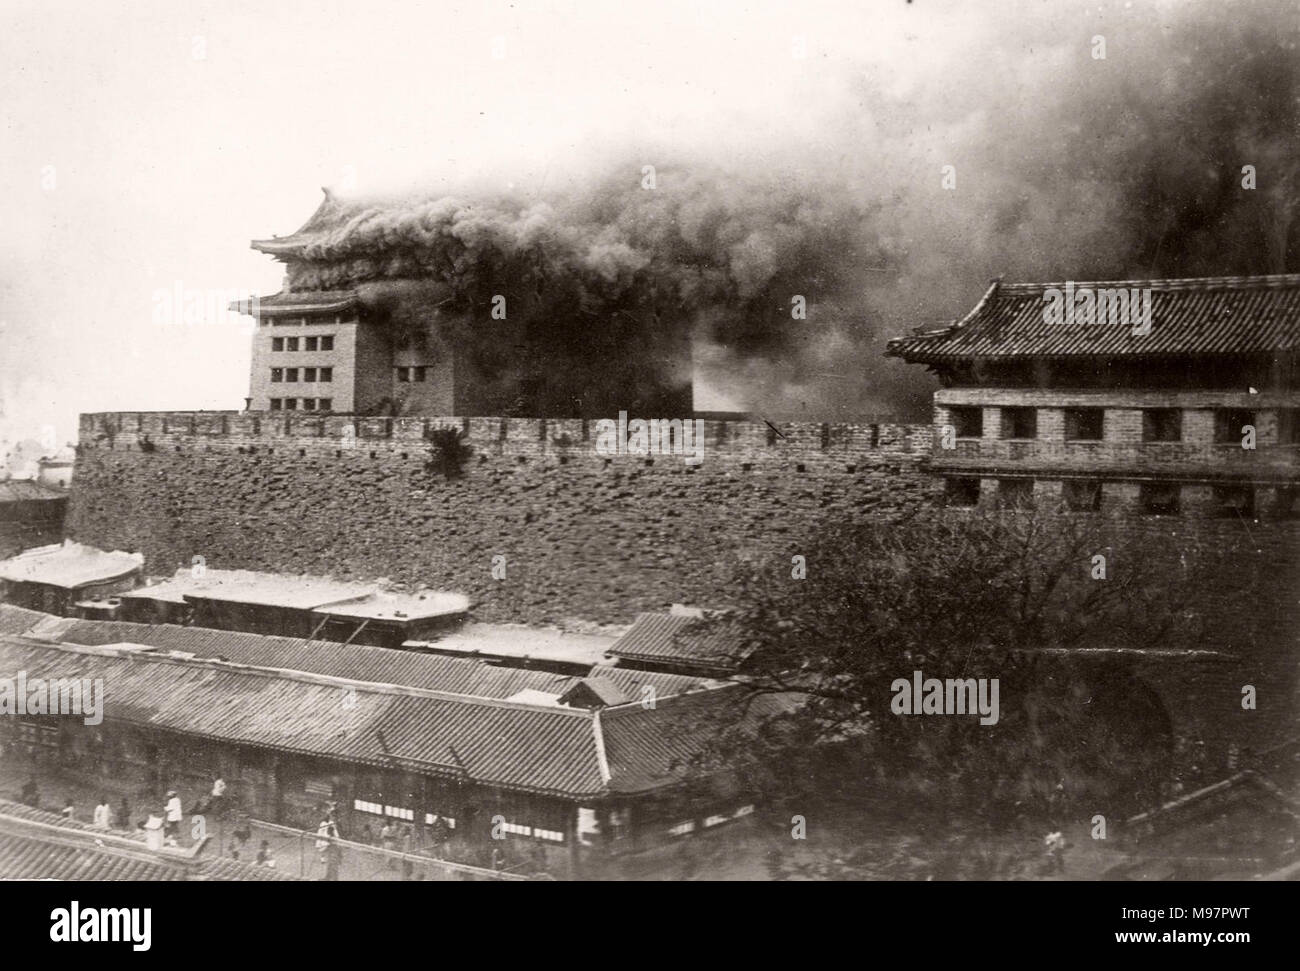 Vintage Foto China 1900 - Boxer Rebellion oder Aufstand, Yihetuan Bewegung - Bild aus einem Album eines britischen Soldaten, nahmen an der Unterdrückung des Aufstandes - Feuer auf der Stadtmauer von Peking Peking Stockfoto